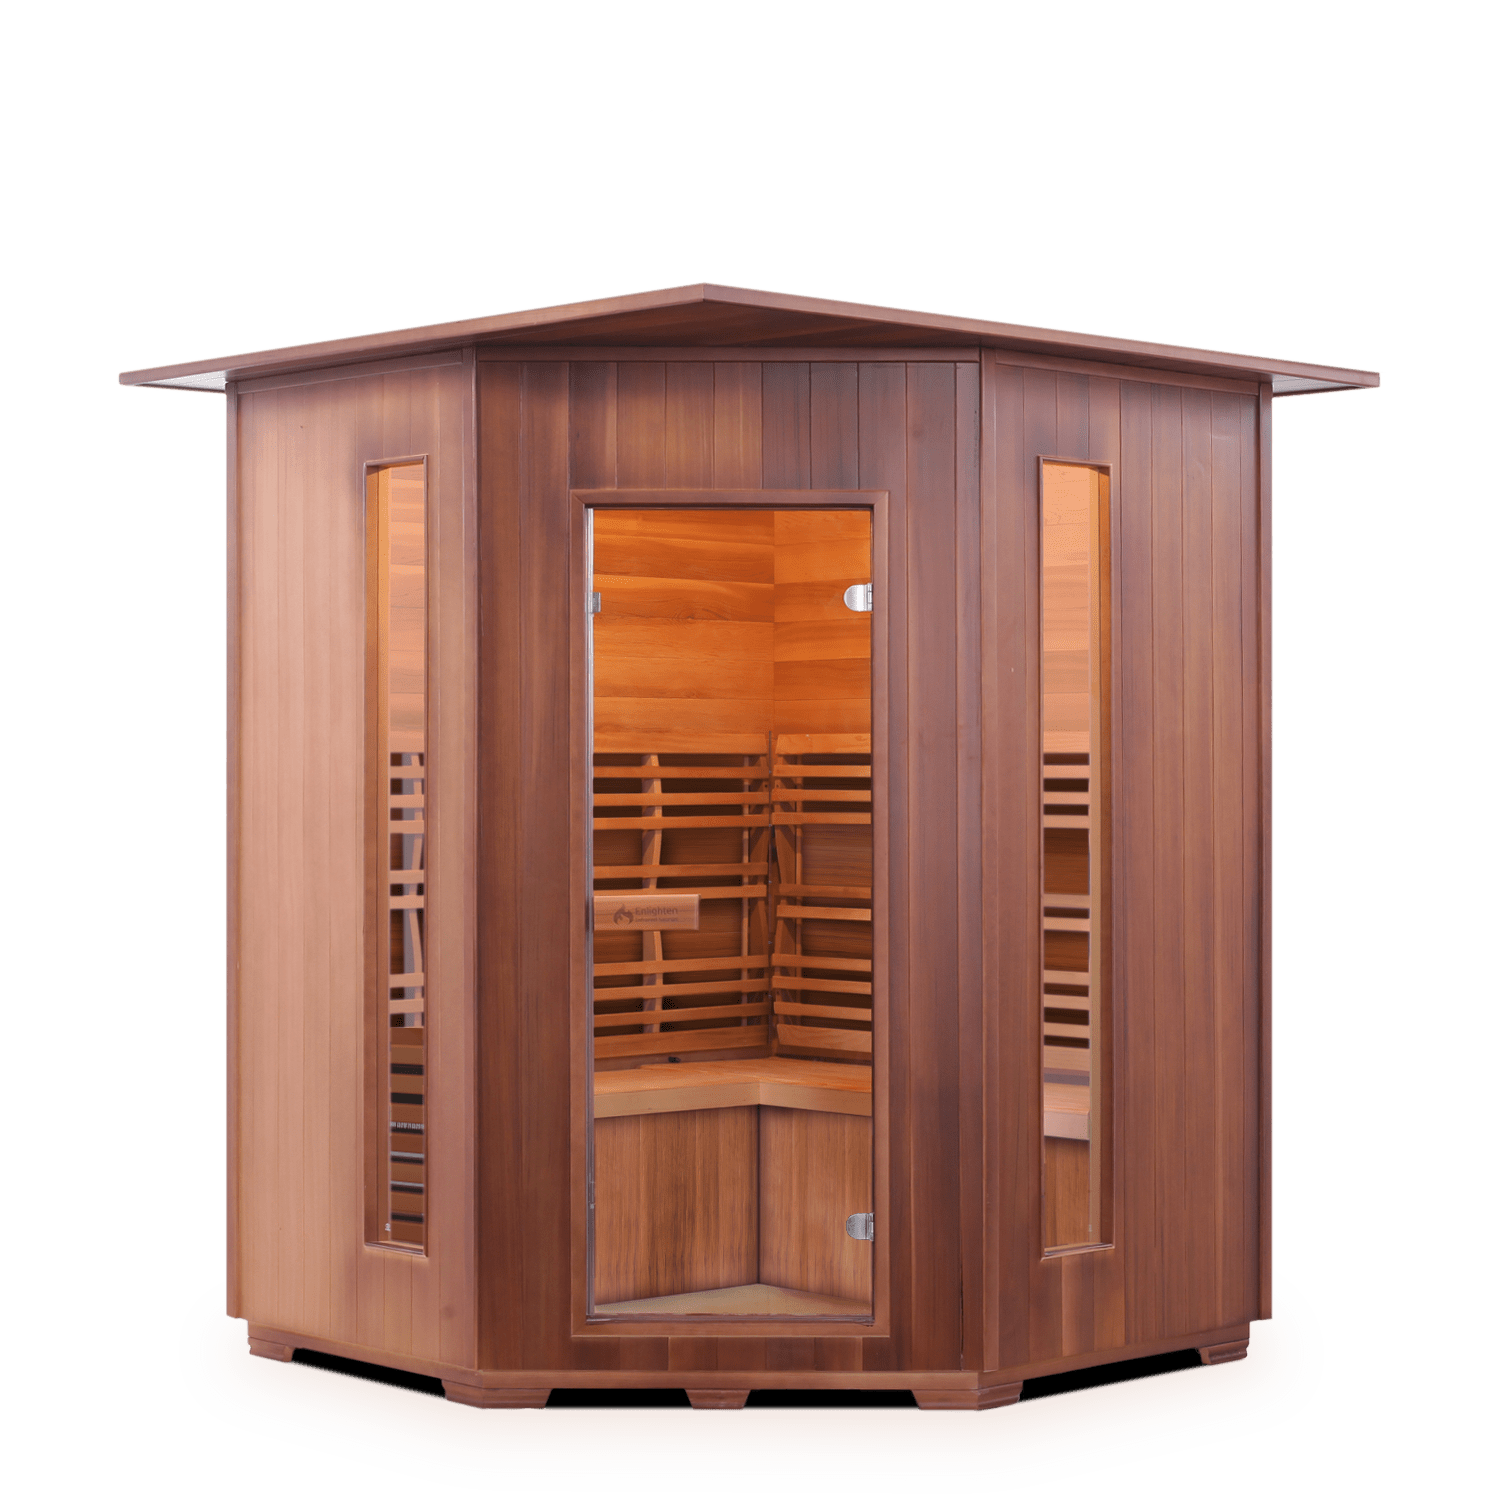 Enlighten Saunas Home Saunas Indoor Enlighten Saunas SunRise 4C - Dry Traditional Sauna (3 Person)